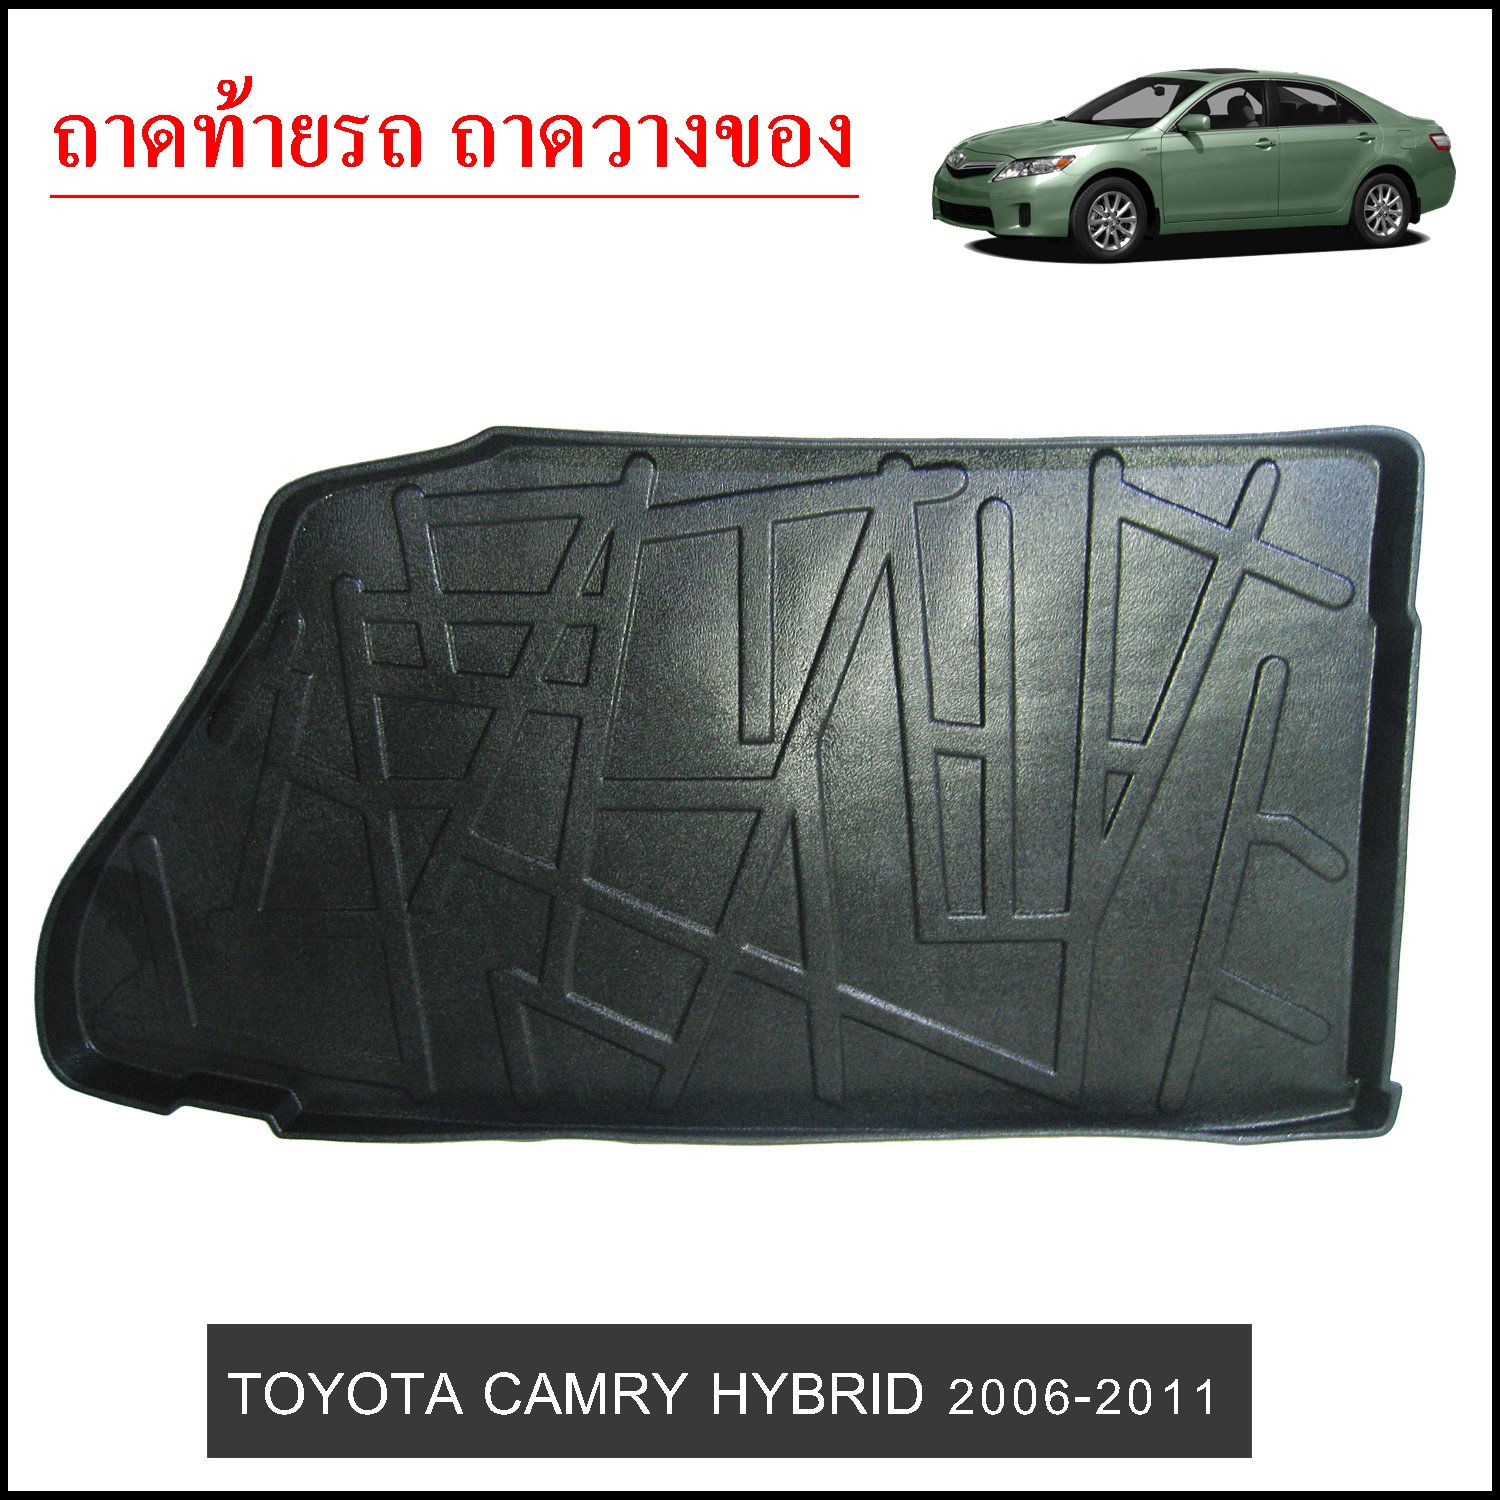 ถาดท้ายวางของ Toyota Camry 2006-2011 HYBRID